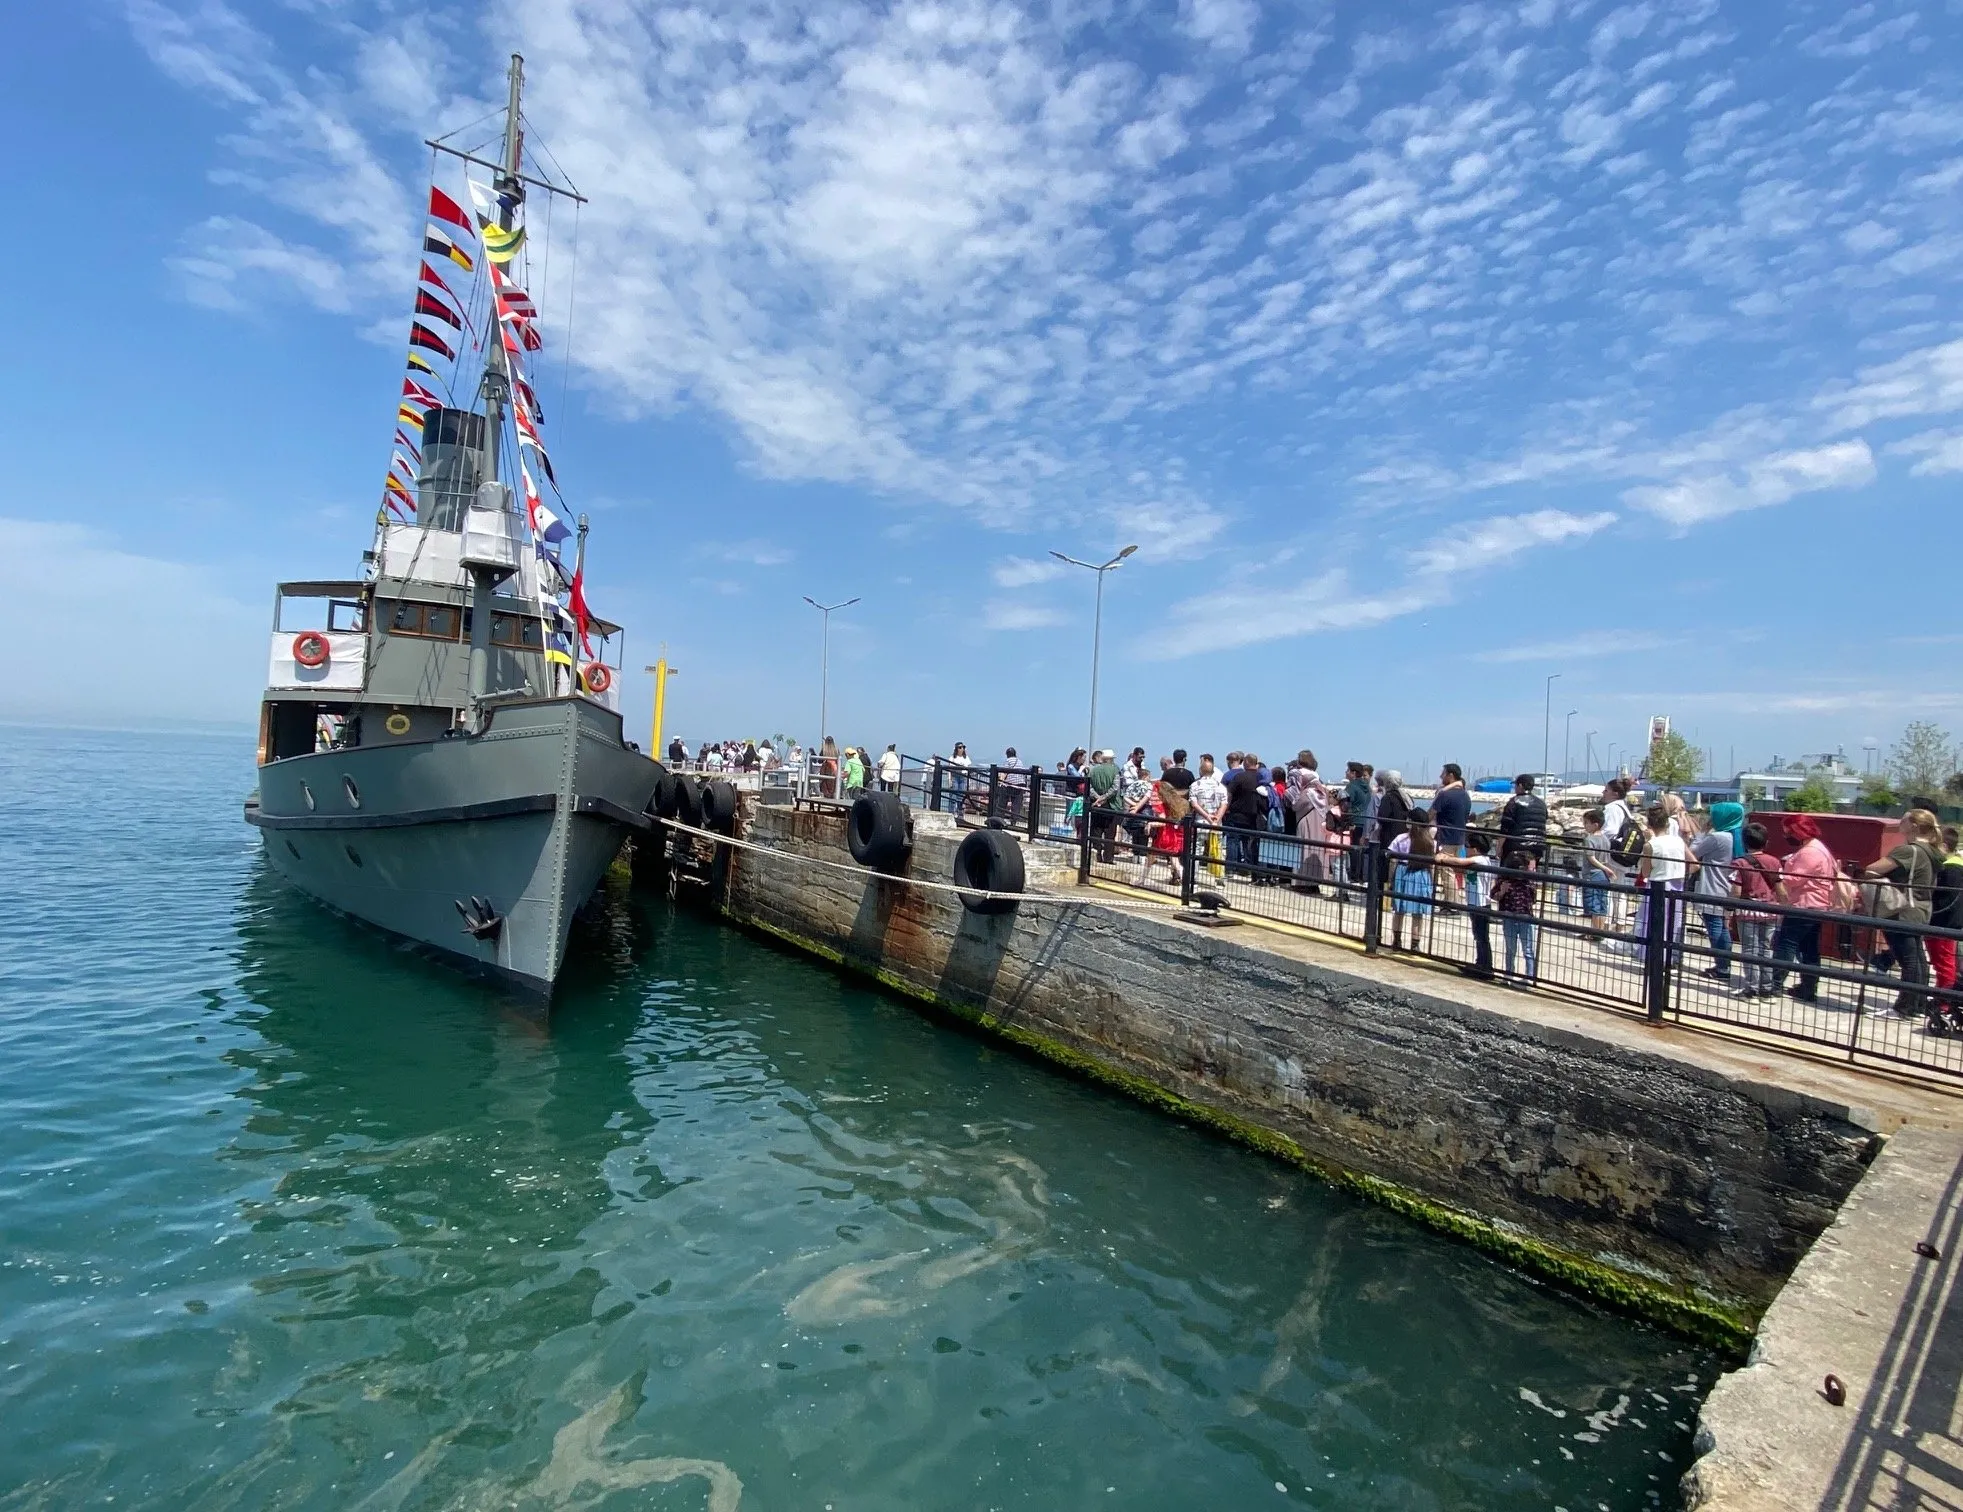 TCG Nusret müze gemisi Ege ve Akdeniz’de ziyarete açılıyor! İşte ziyaret rotaları